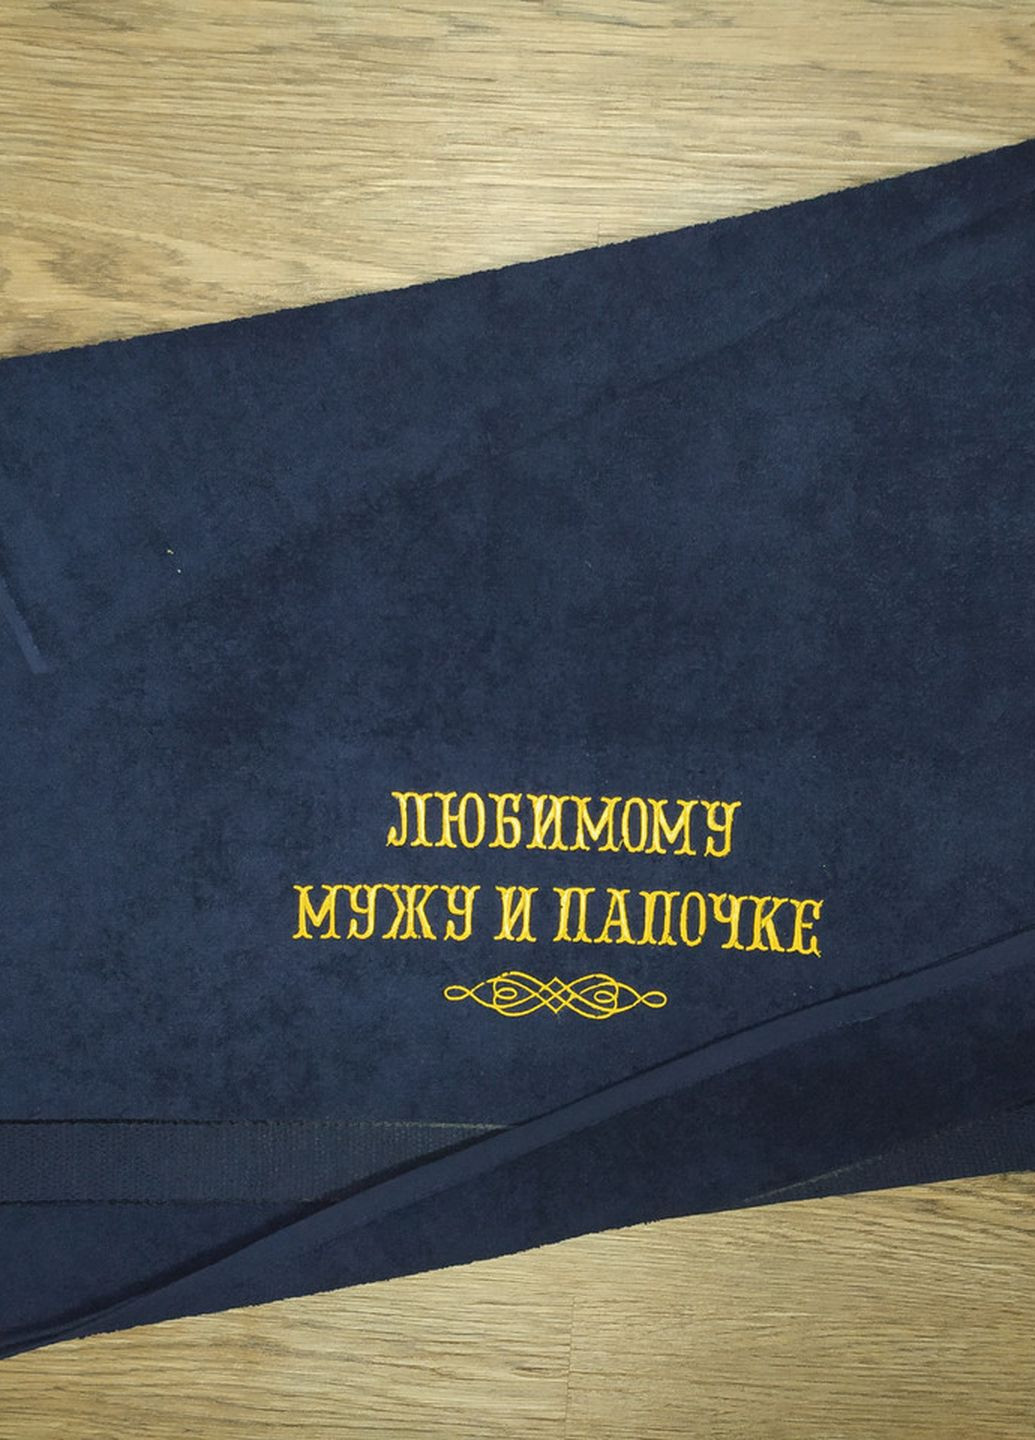 No Brand полотенце с вышивкой махровое банное 70*140 темно-синий мужу папе 00266 однотонный темно-синий производство - Украина